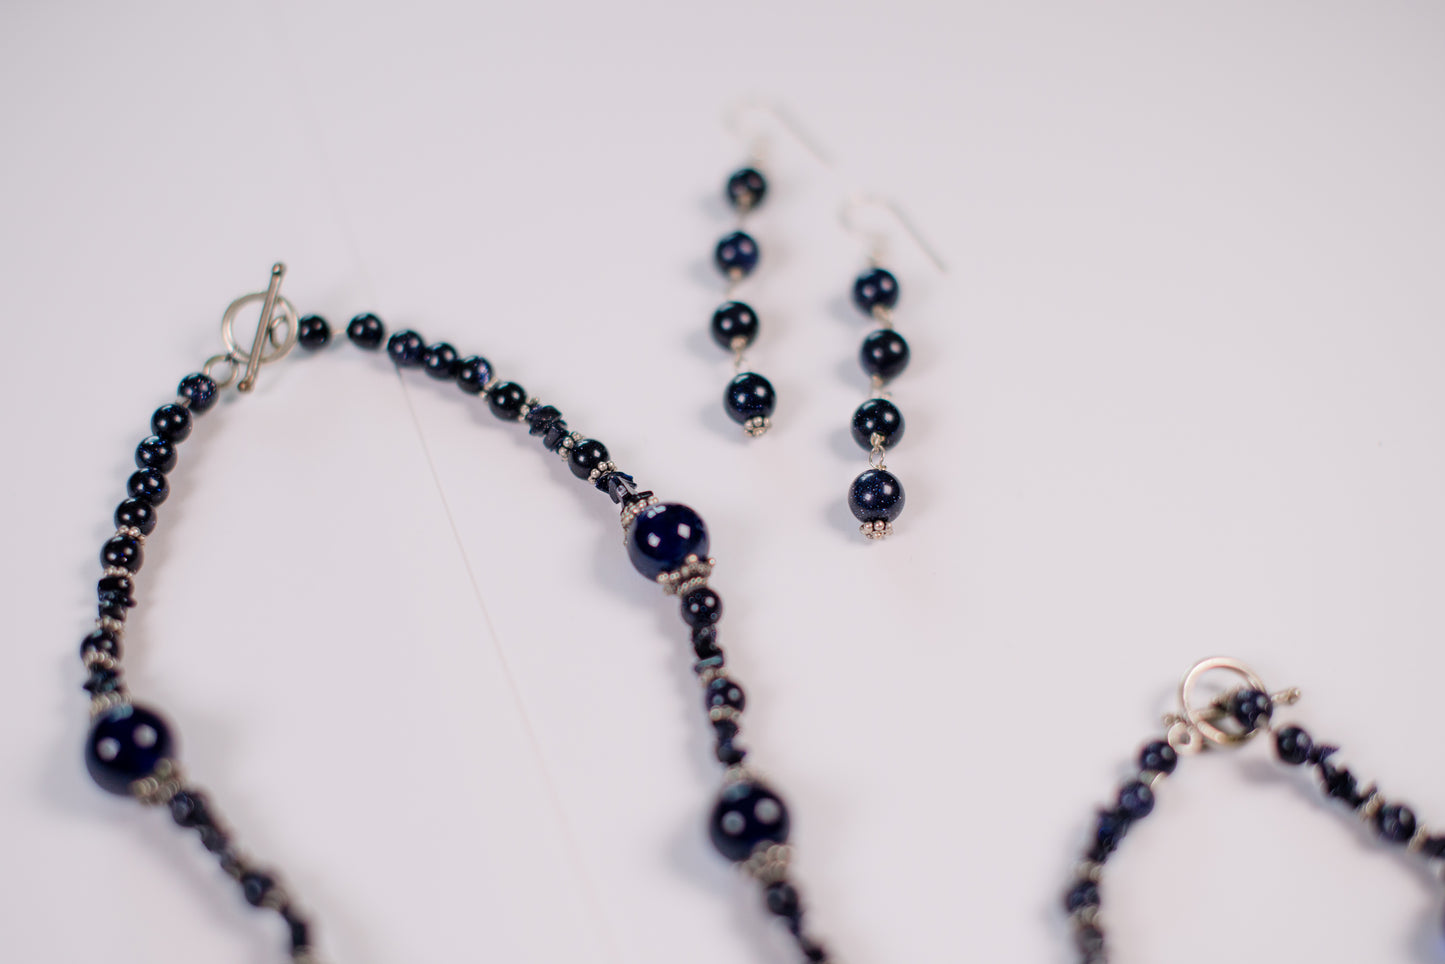 Midnight Blue Necklace/Bracelet/Earrings Set